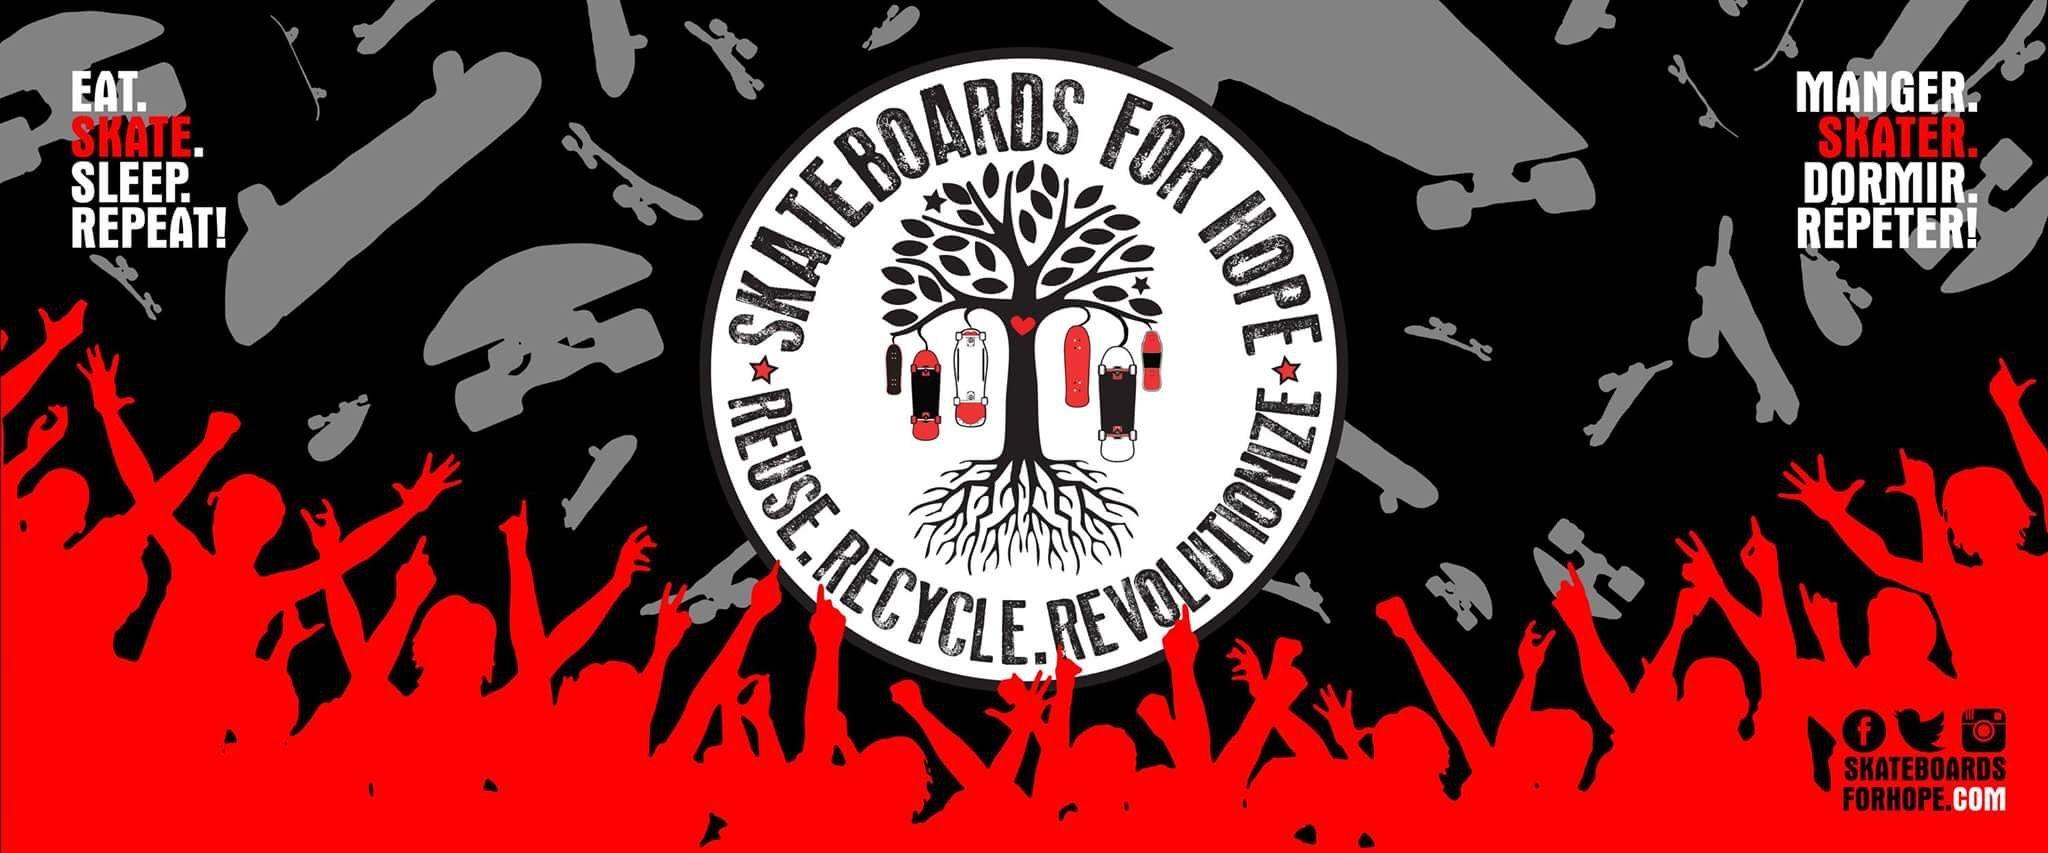 Jackalope Helmet Logo - JACKALOPE X Skateboards For Hope | Jackalope